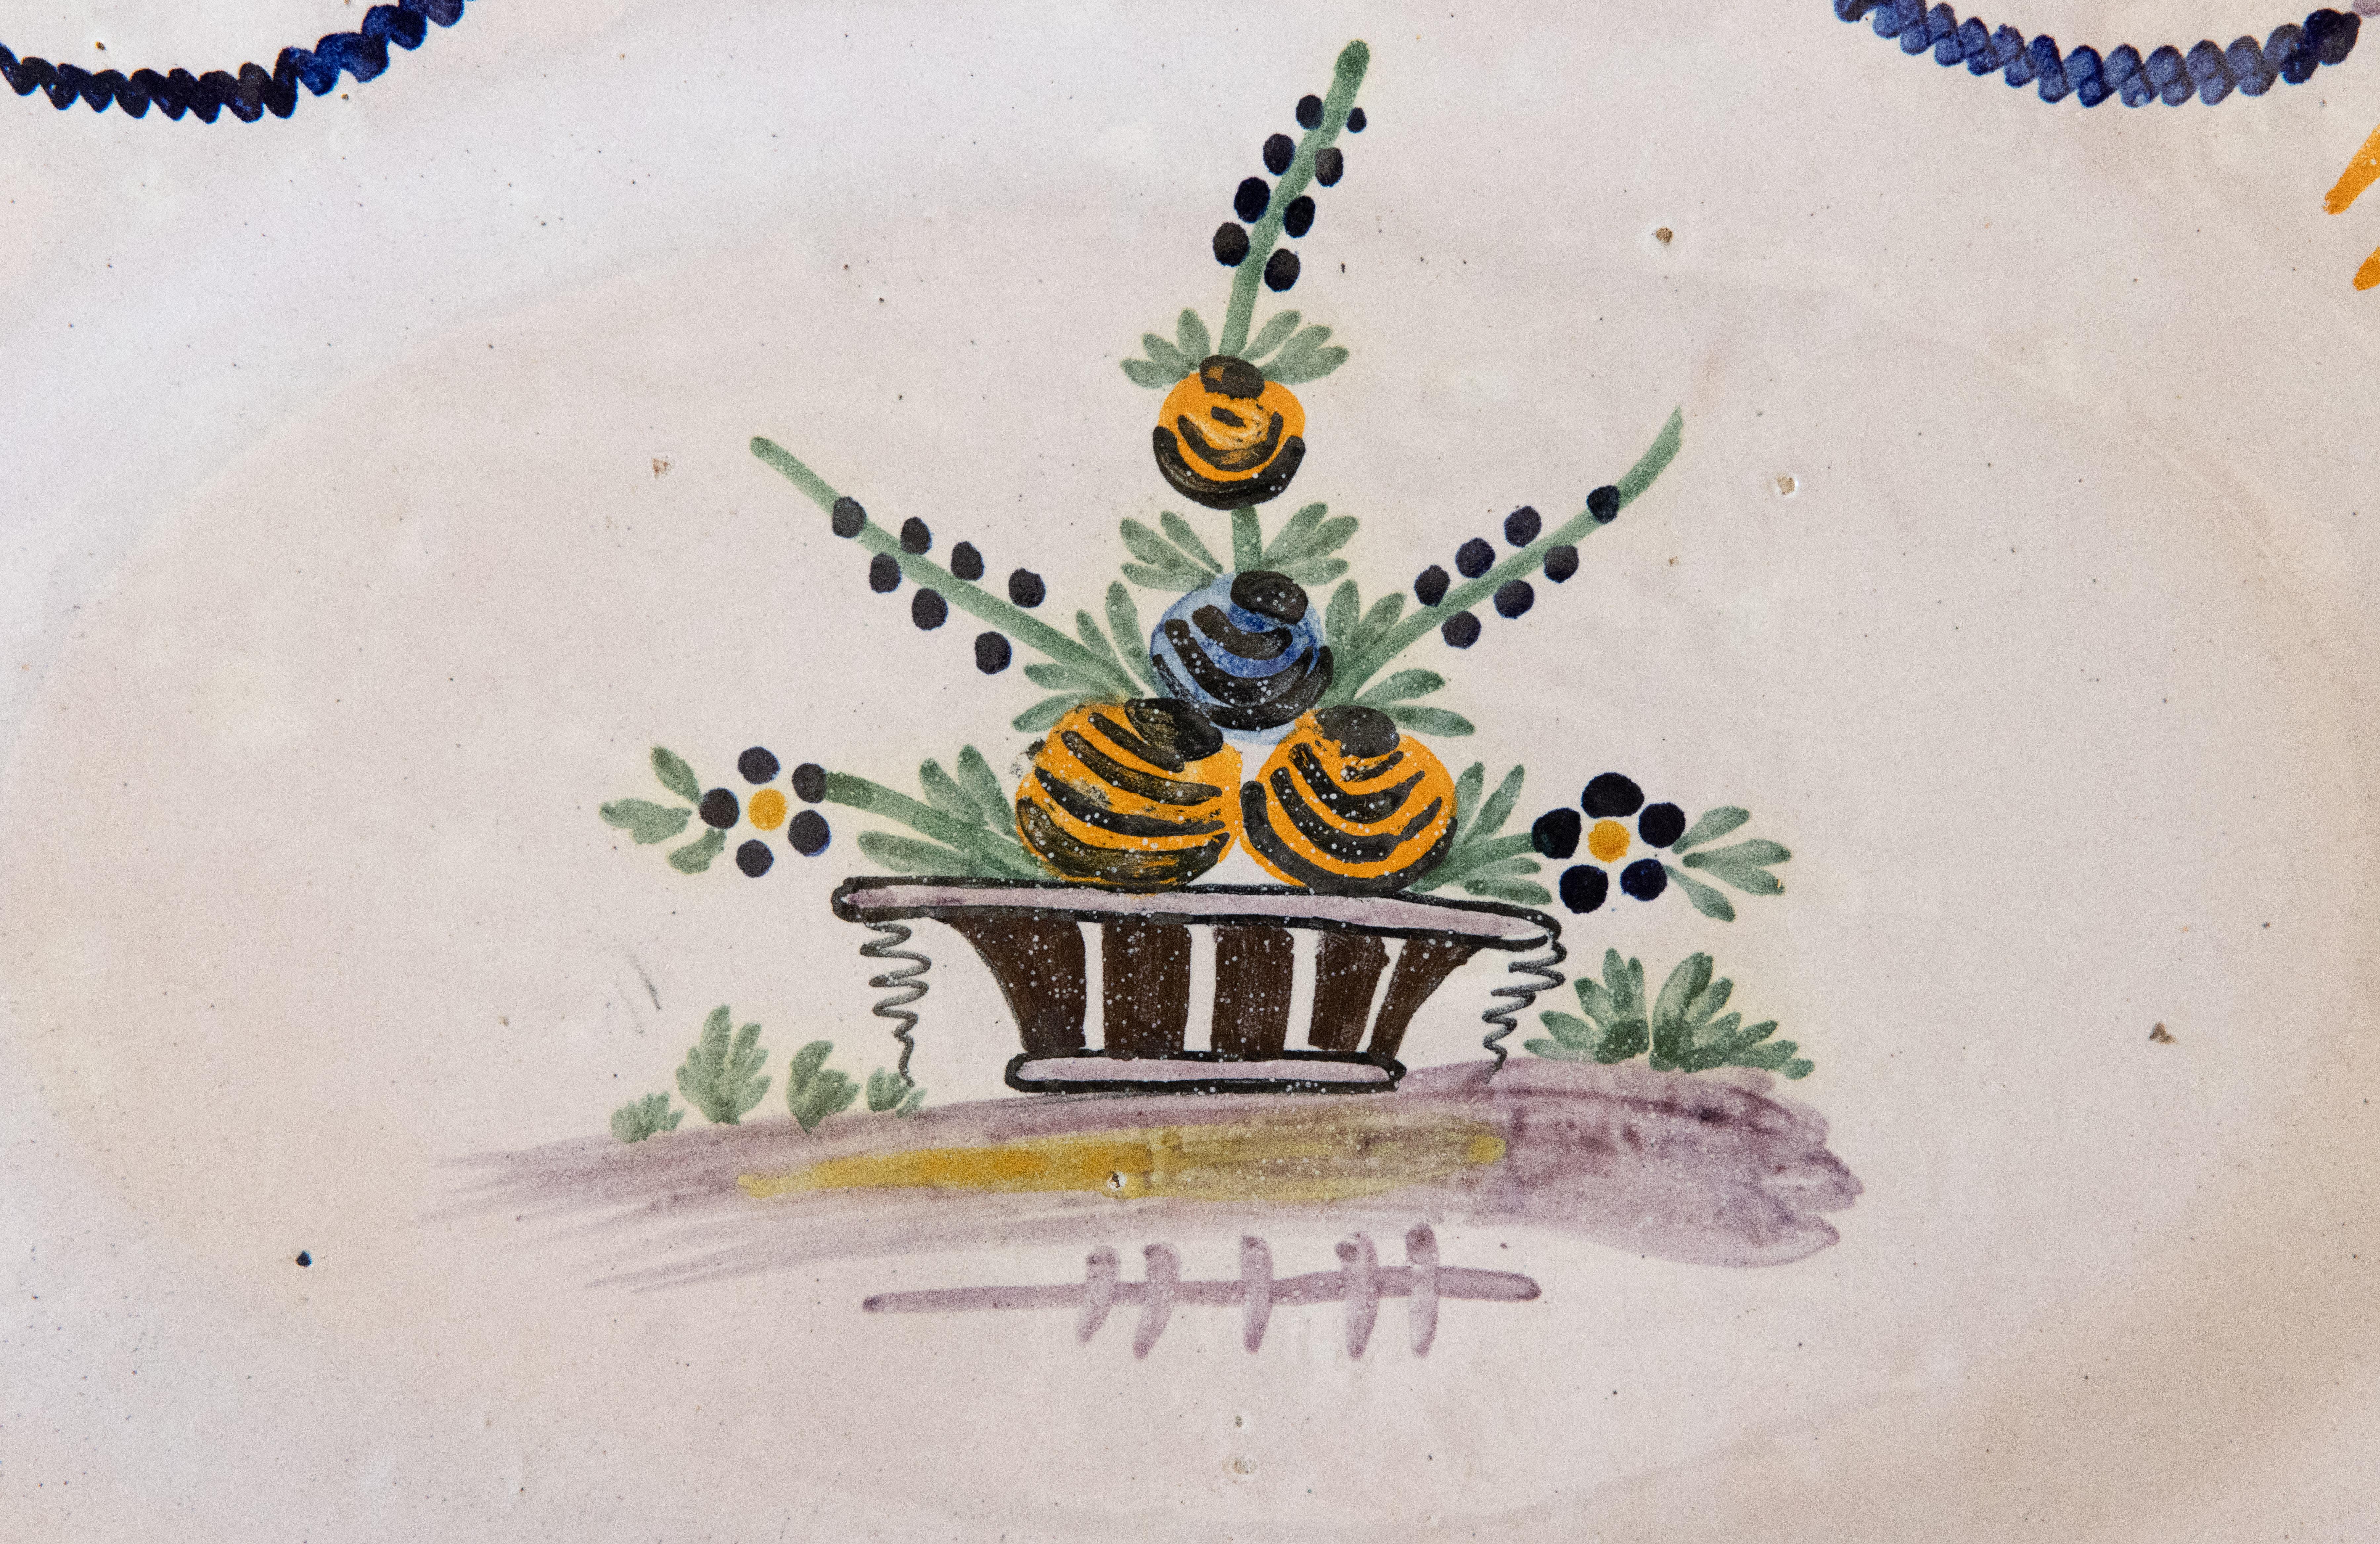 Magnifique plateau mural ovale en faïence peint à la main par les Moustiers au 19e siècle. Ce rare plat décoratif présente des détails remarquables avec un pot de fleurs peint à la main au centre, entouré d'une guirlande festive et d'un ravissant